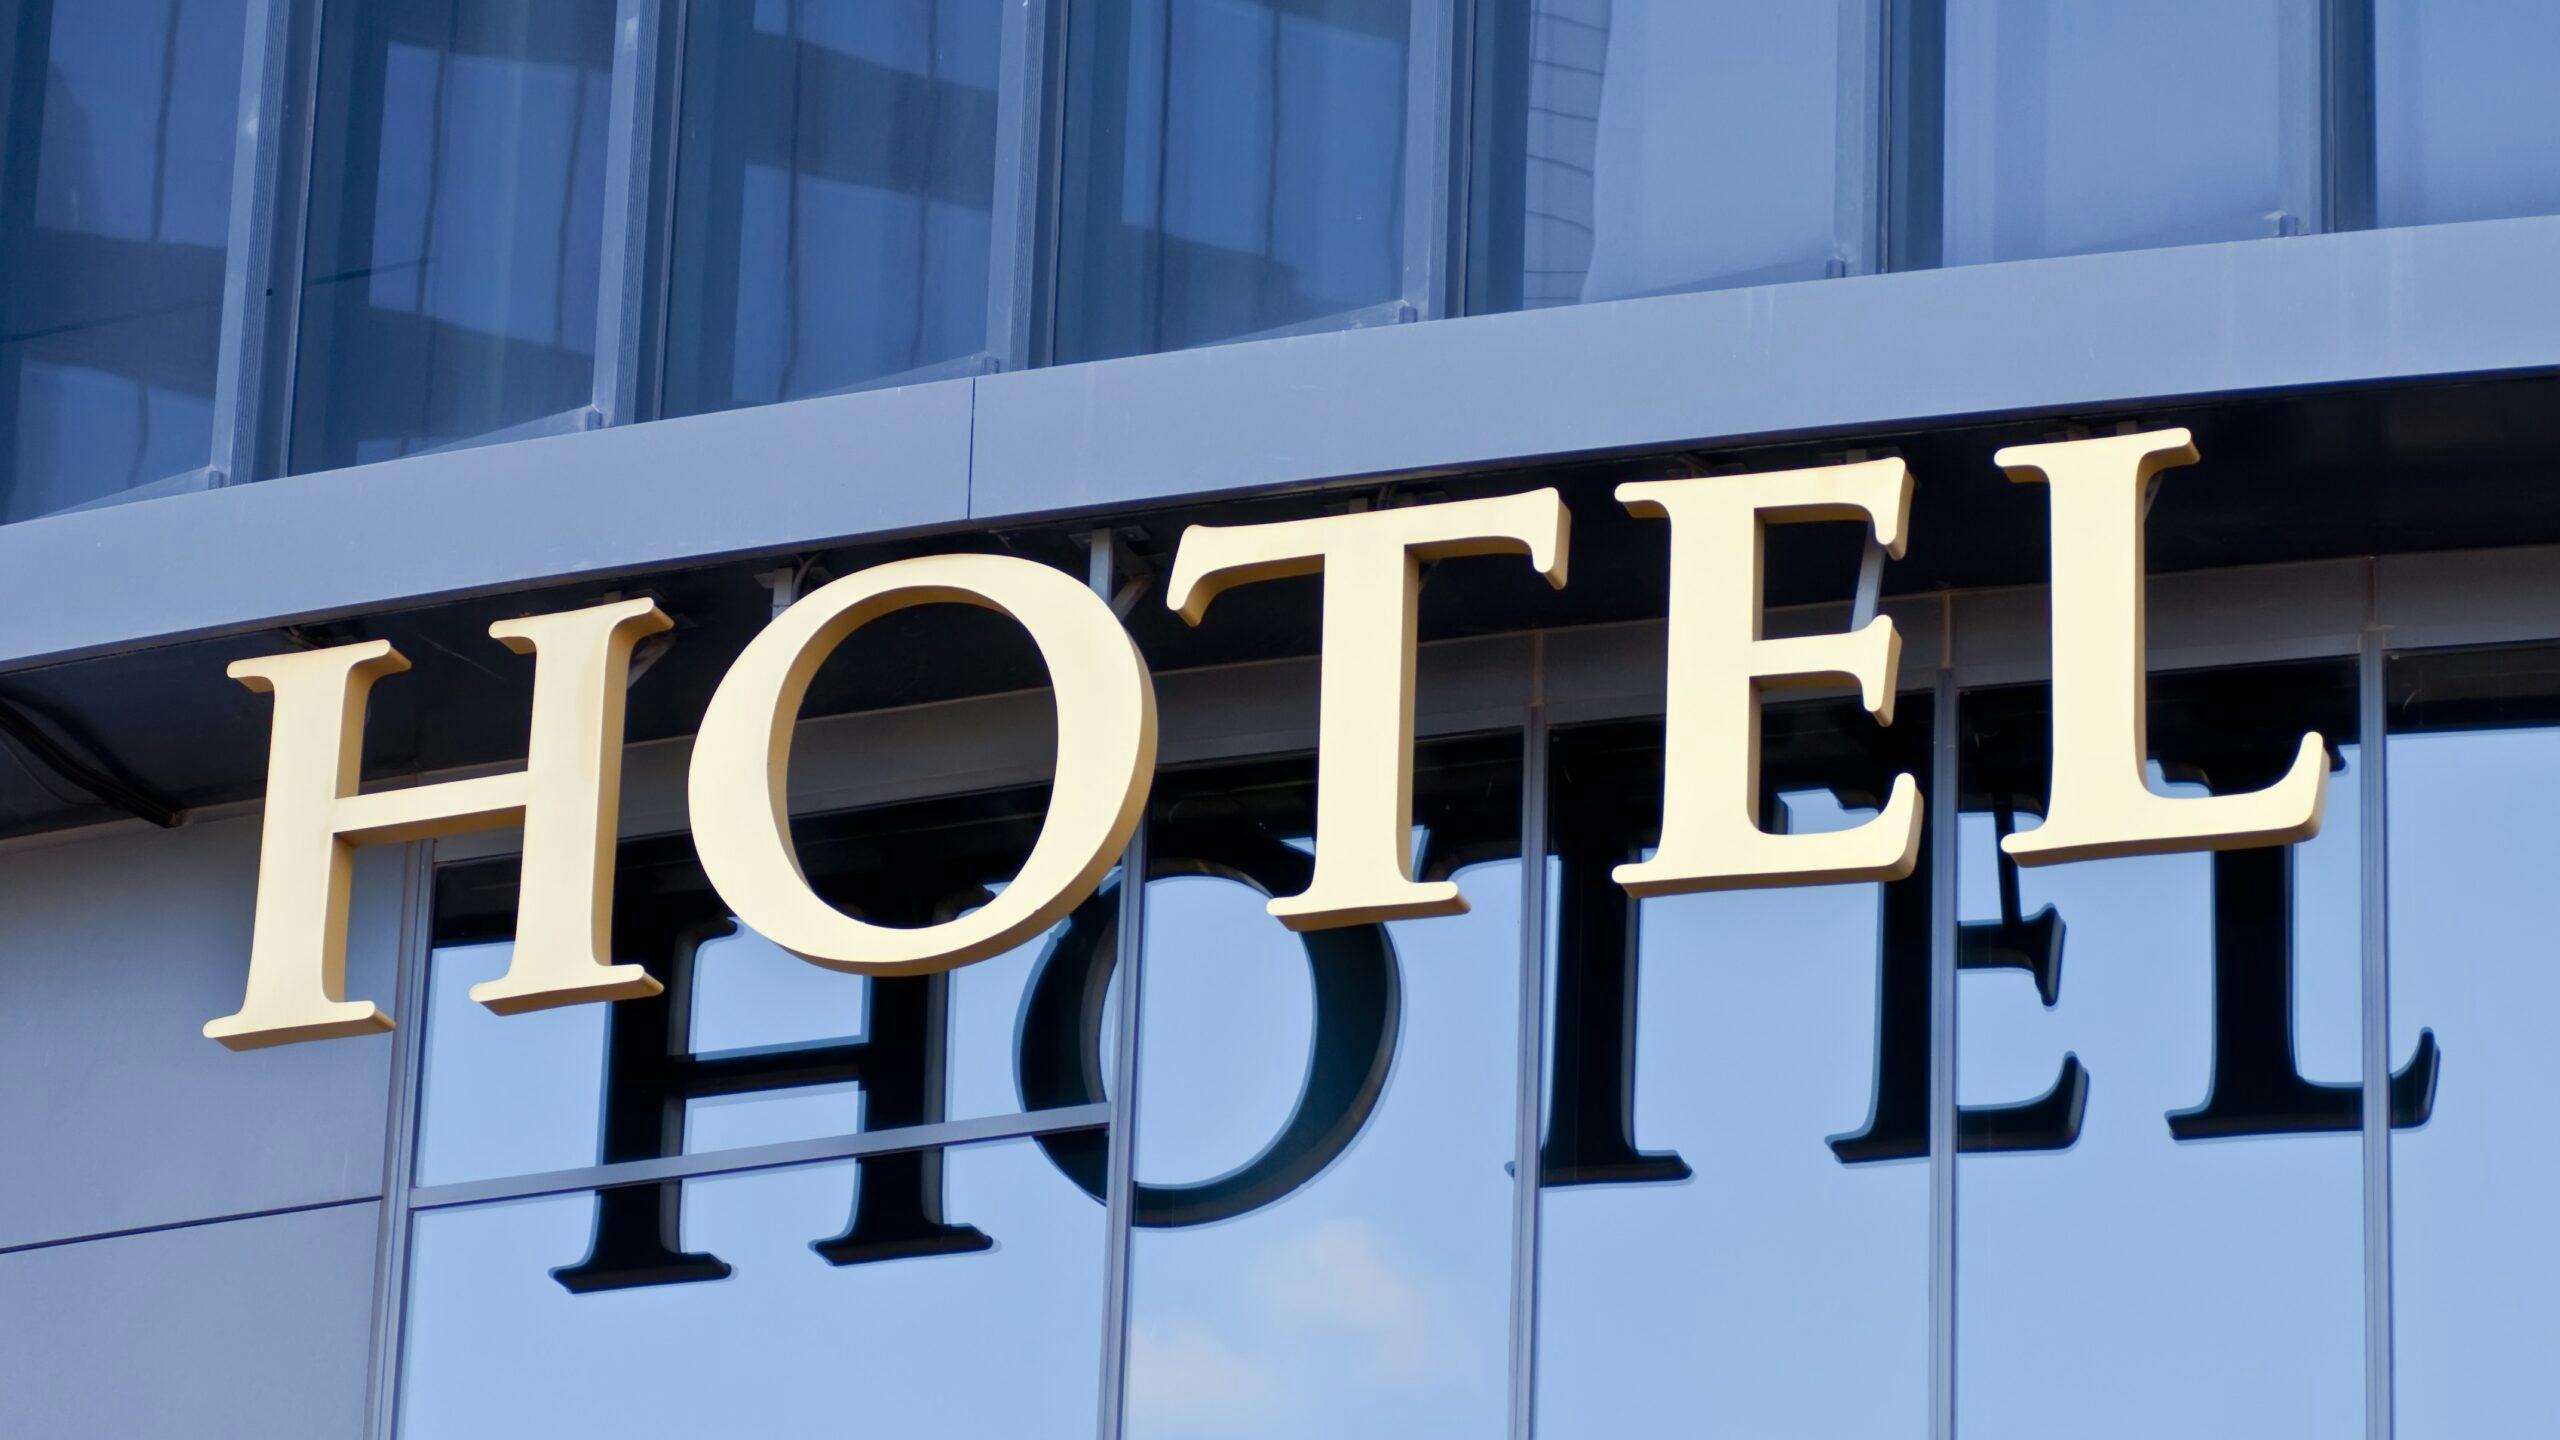 Hosta: 'Hotelmarkt herstelt snel, maar nieuwe crisis dreigt'